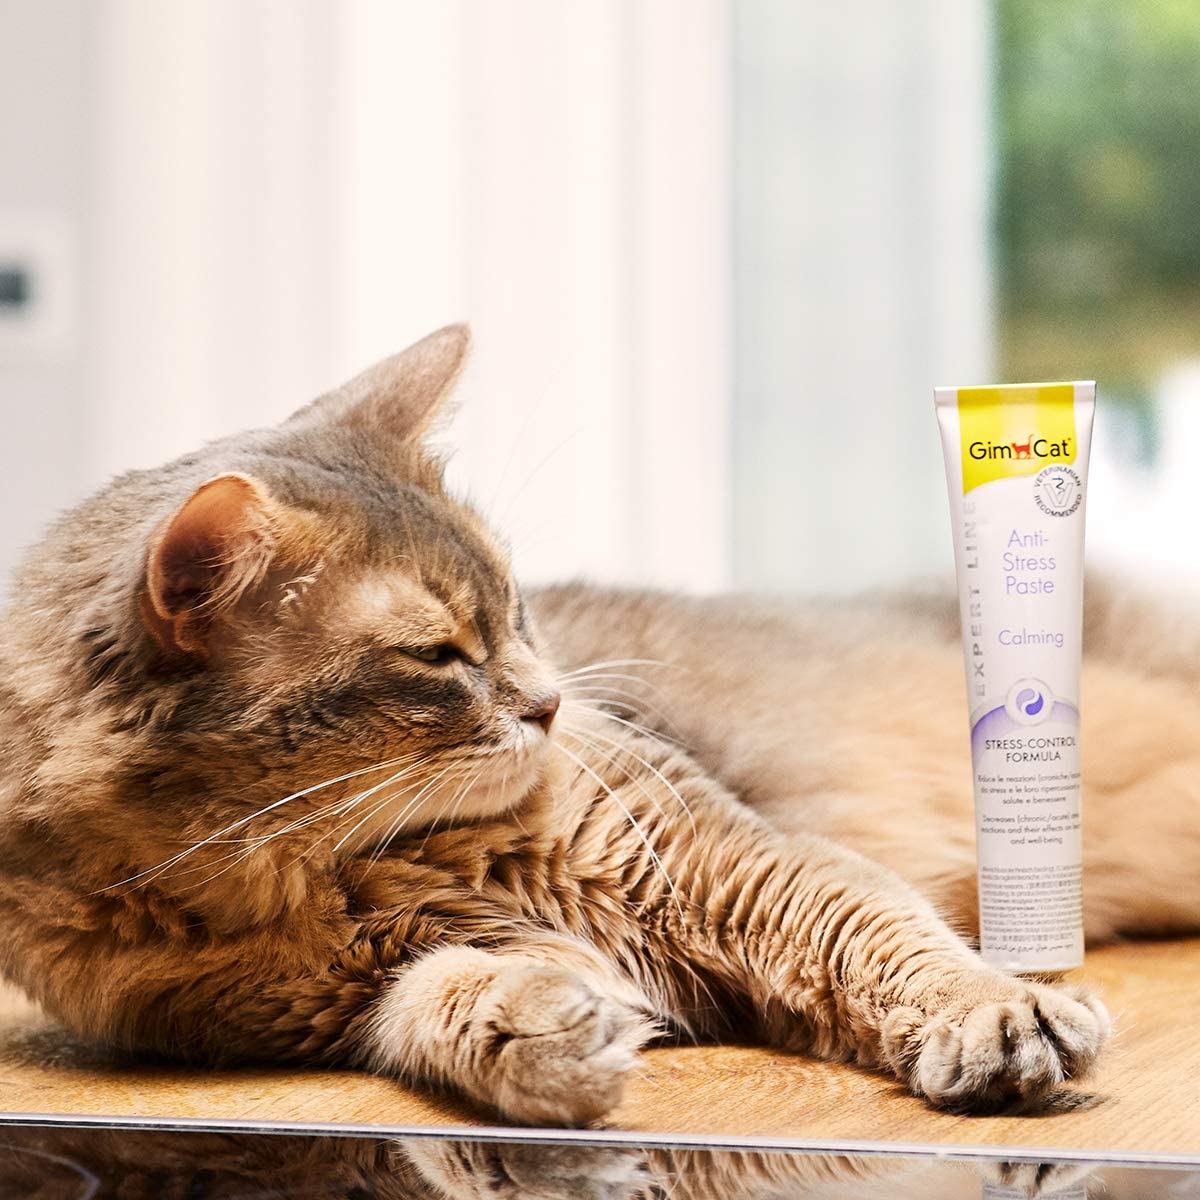  GimCat EXPERT LINE Anti-Stress, pasta - Snack para gatos funcional que reduce las reacciones provocadas por el estrés en gatos - 1 tubo (1 x 50 g) 